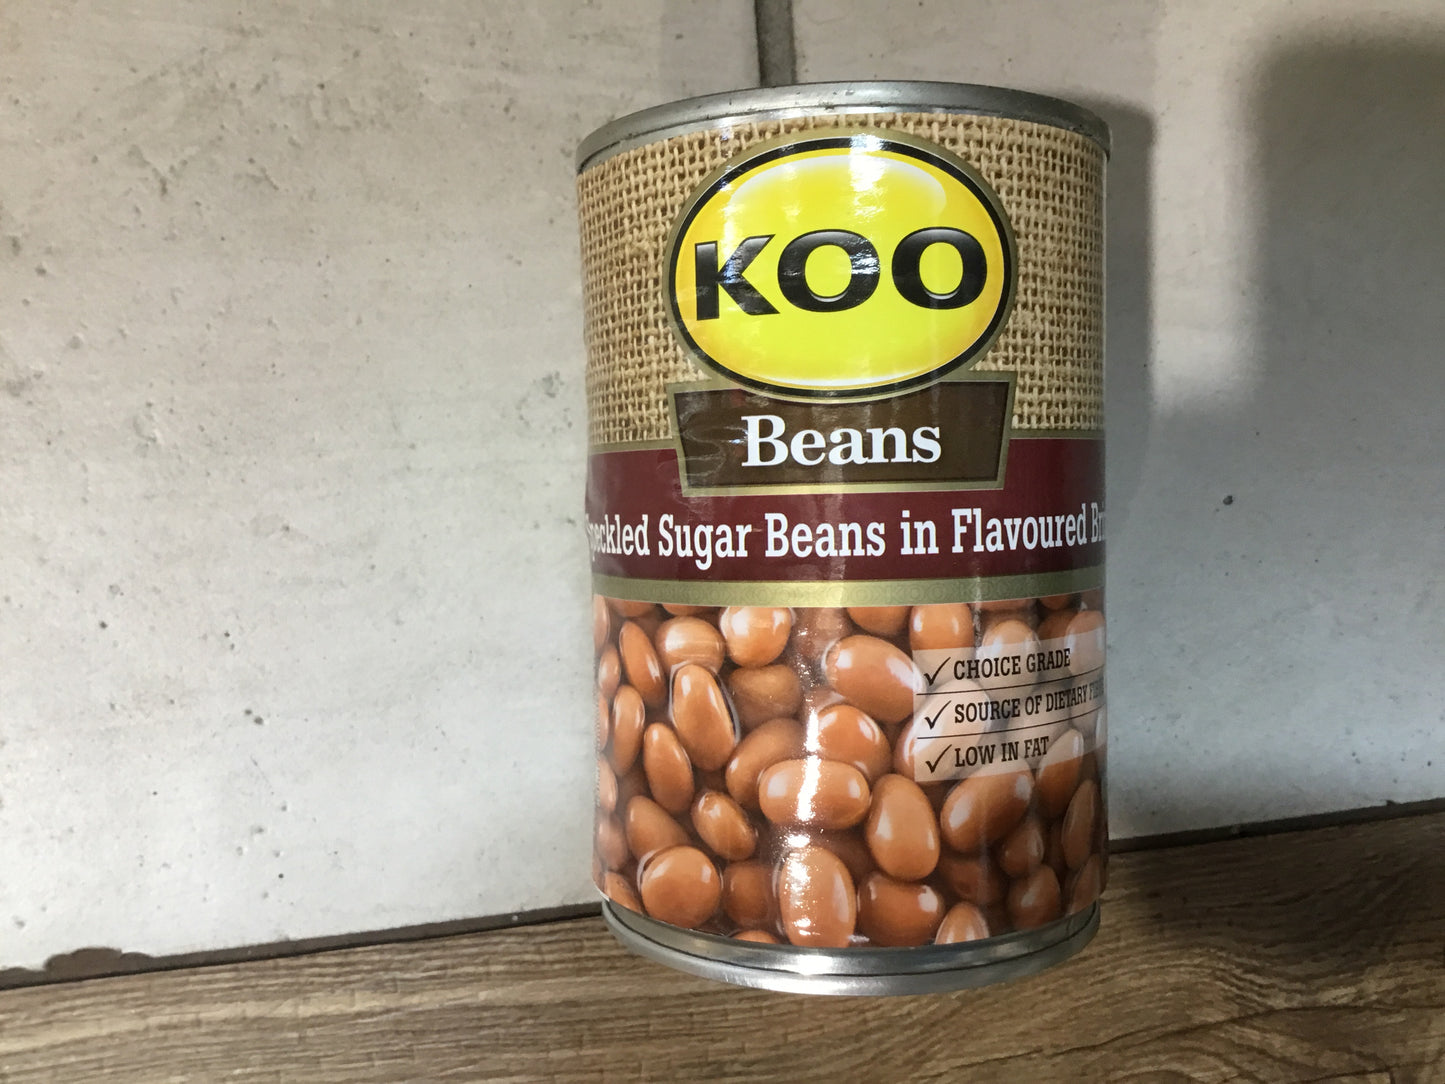 Koo Speckled Sugar Beans 410g